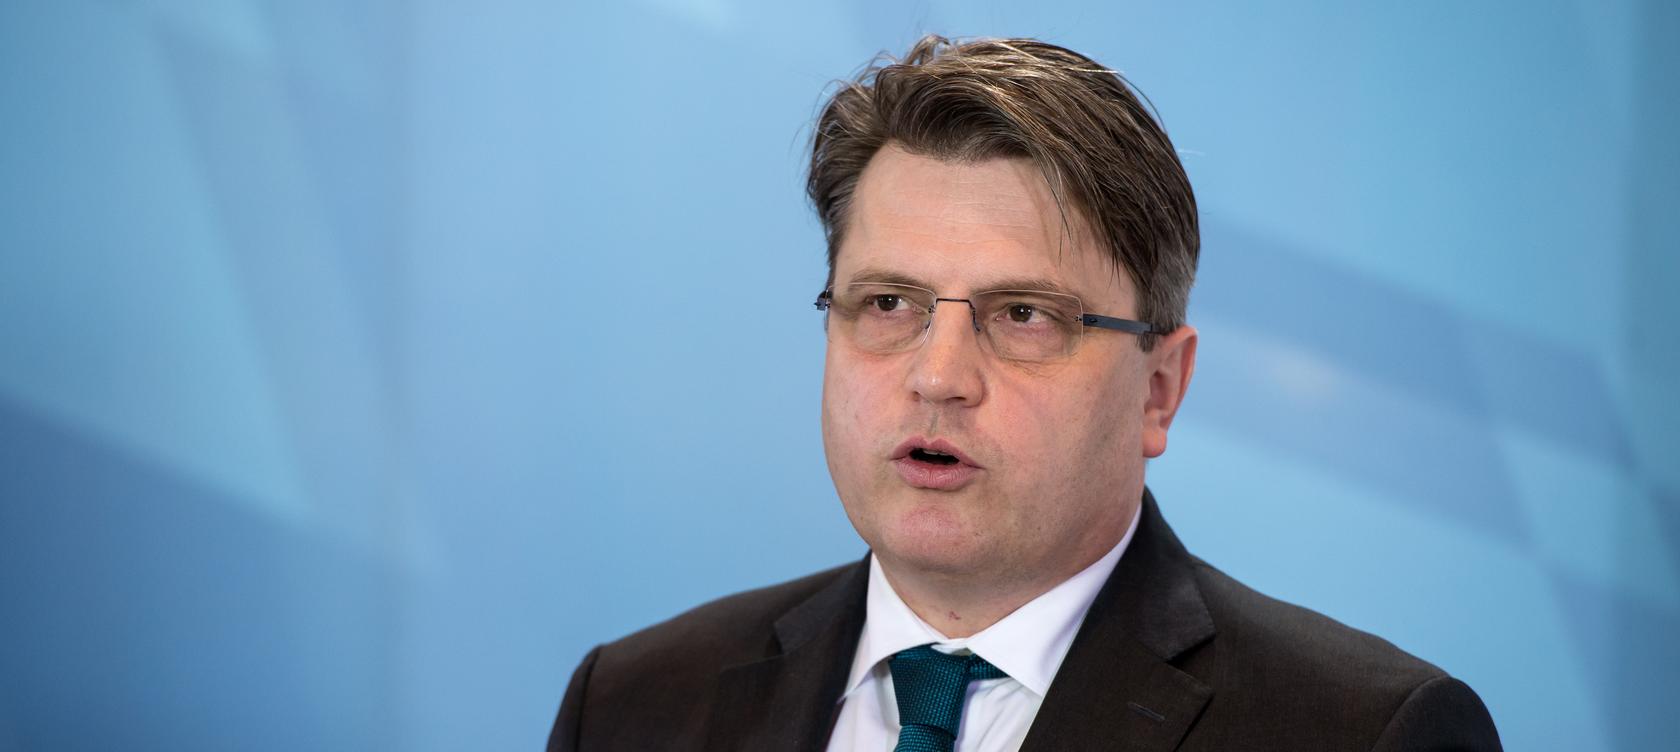 Bayern verzichtet vorerst auf Klage gegen Bundesregierung 